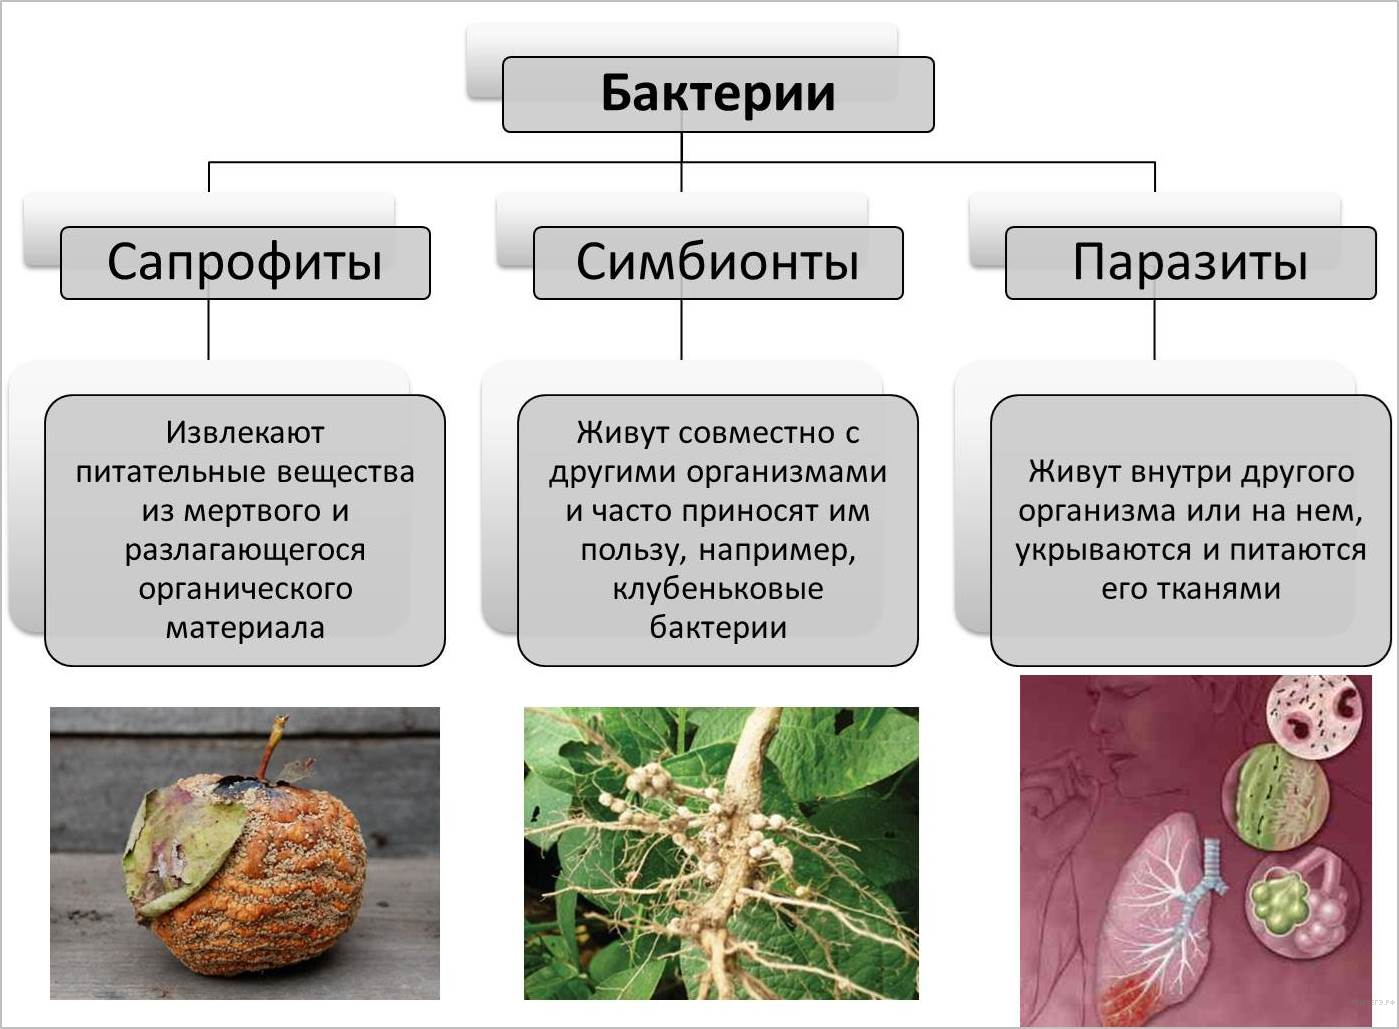 Классификация грибов: симбионты, сапрофиты, паразиты, отличительные признаки, особенности питания, съедобные виды, значение